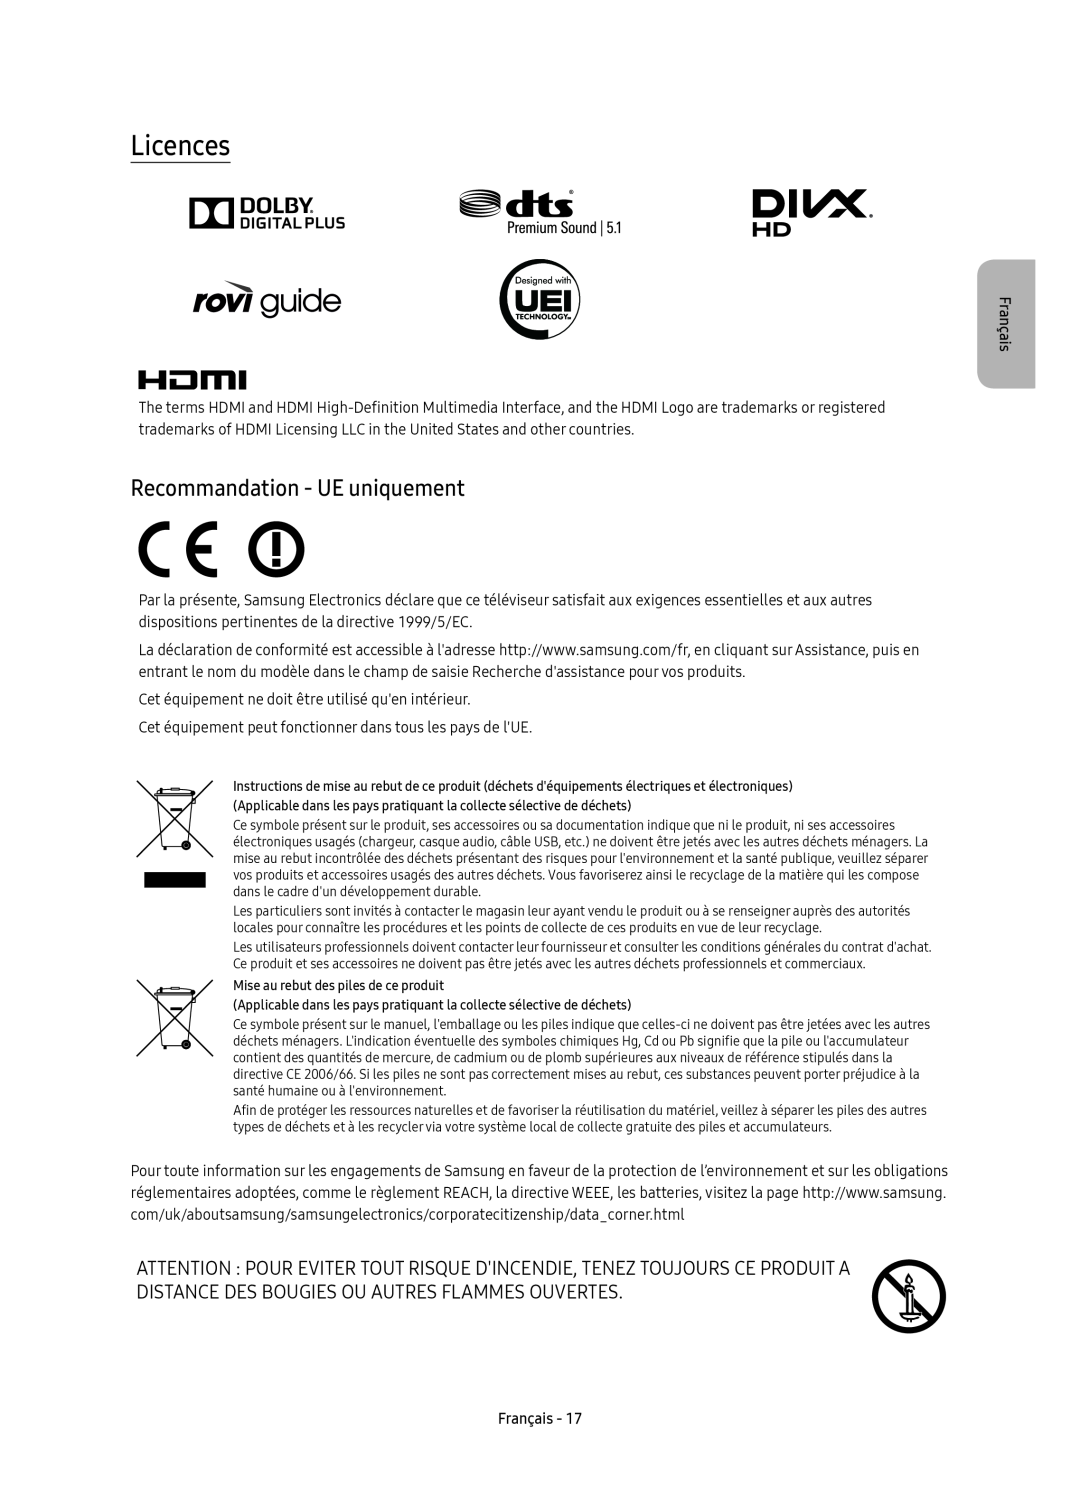 Samsung UE55KU6510UXZF manual Recommandation - UE uniquement, Licences, Français, Mise au rebut des piles de ce produit 